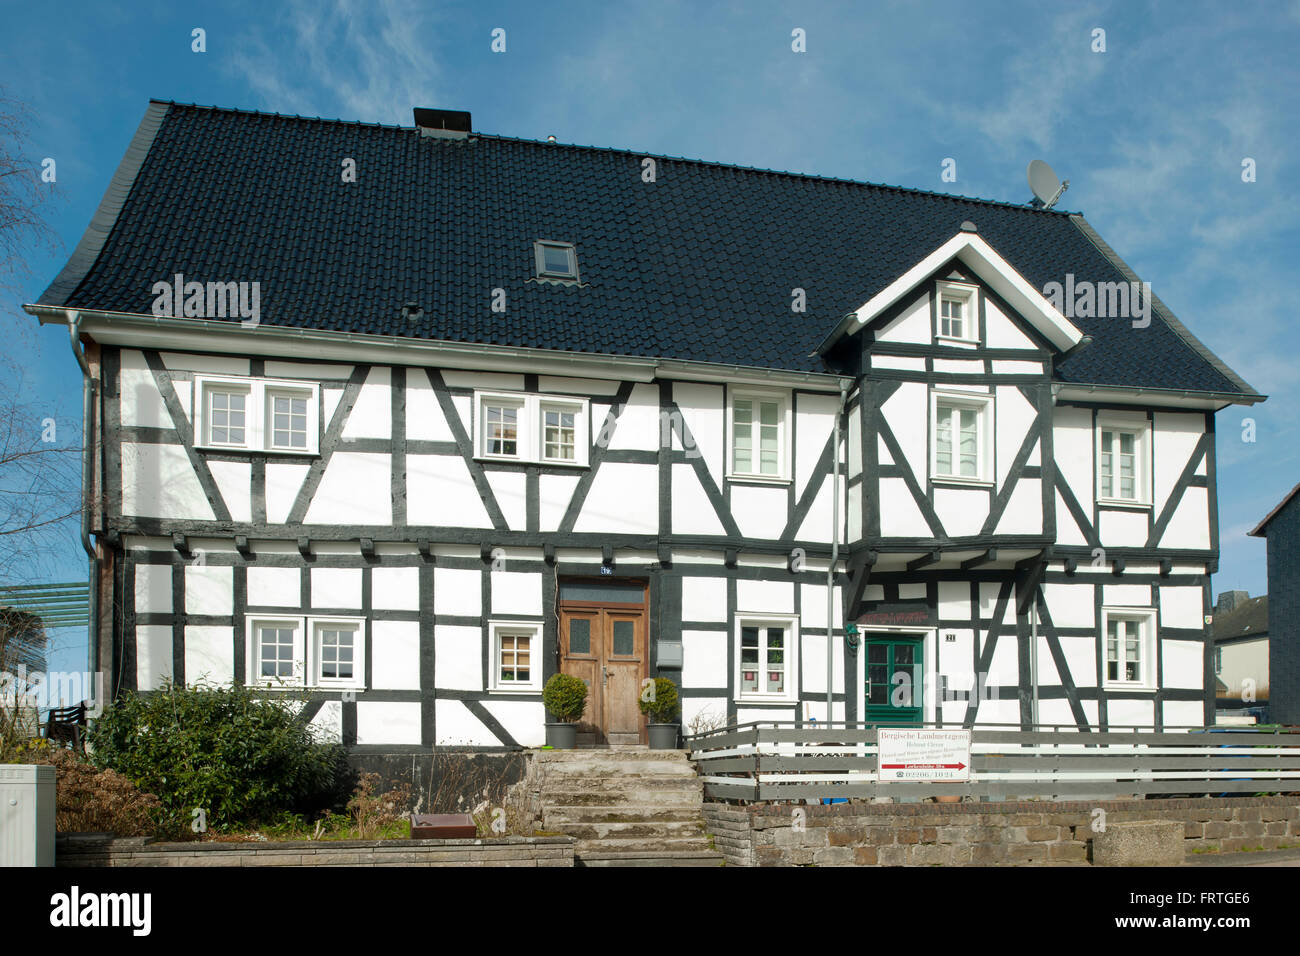 Germany, Rheinisch-Bergischer Kreis, Overrath-Marialinden, ältestes Haus der Ortschaft an der Pilgerstrasse 19-21, Baudenkmal Nr. 109 Stock Photo